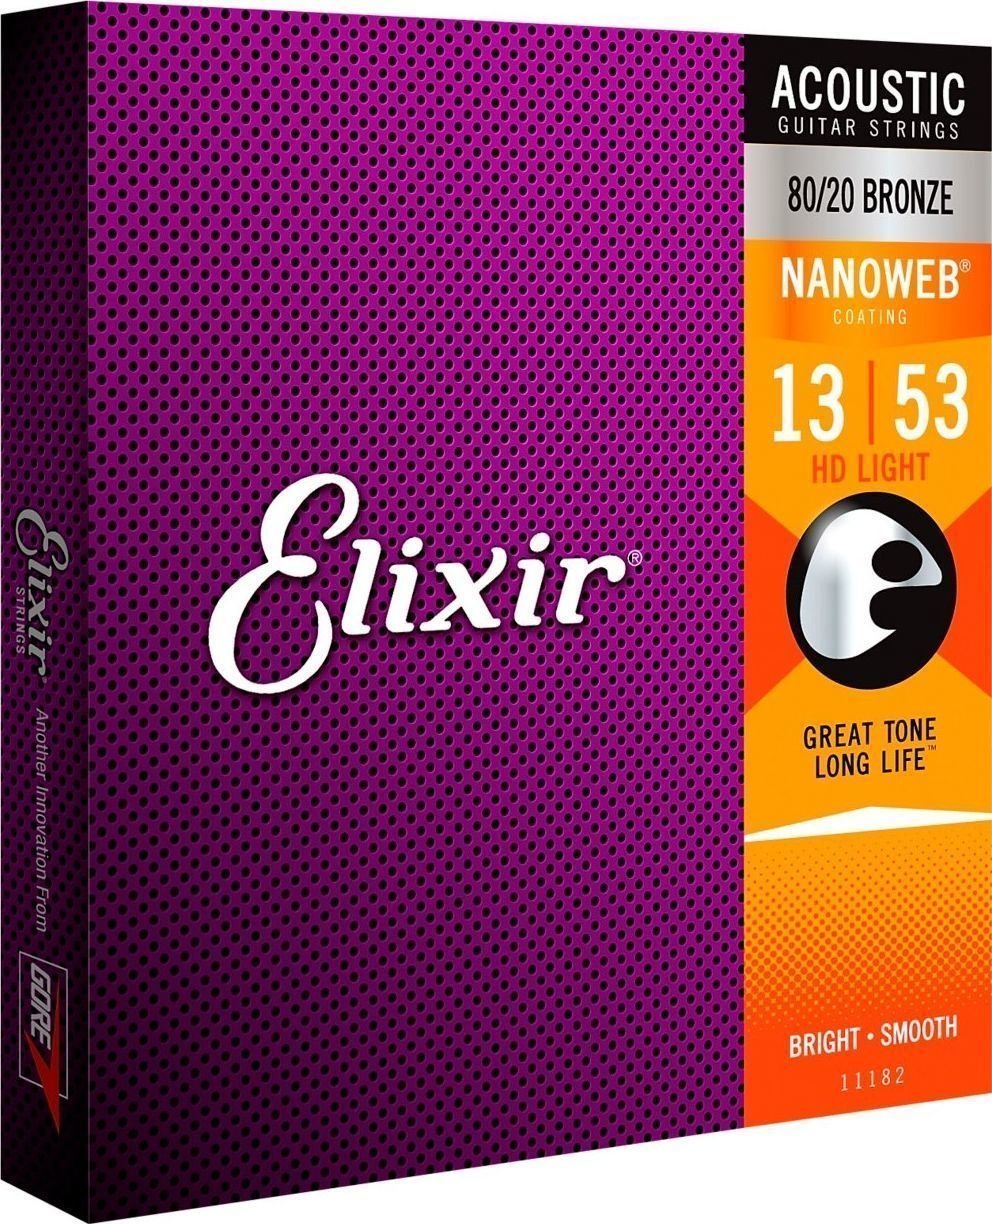 Struny pre akustickú gitaru Elixir 11182 Nanoweb 13-53